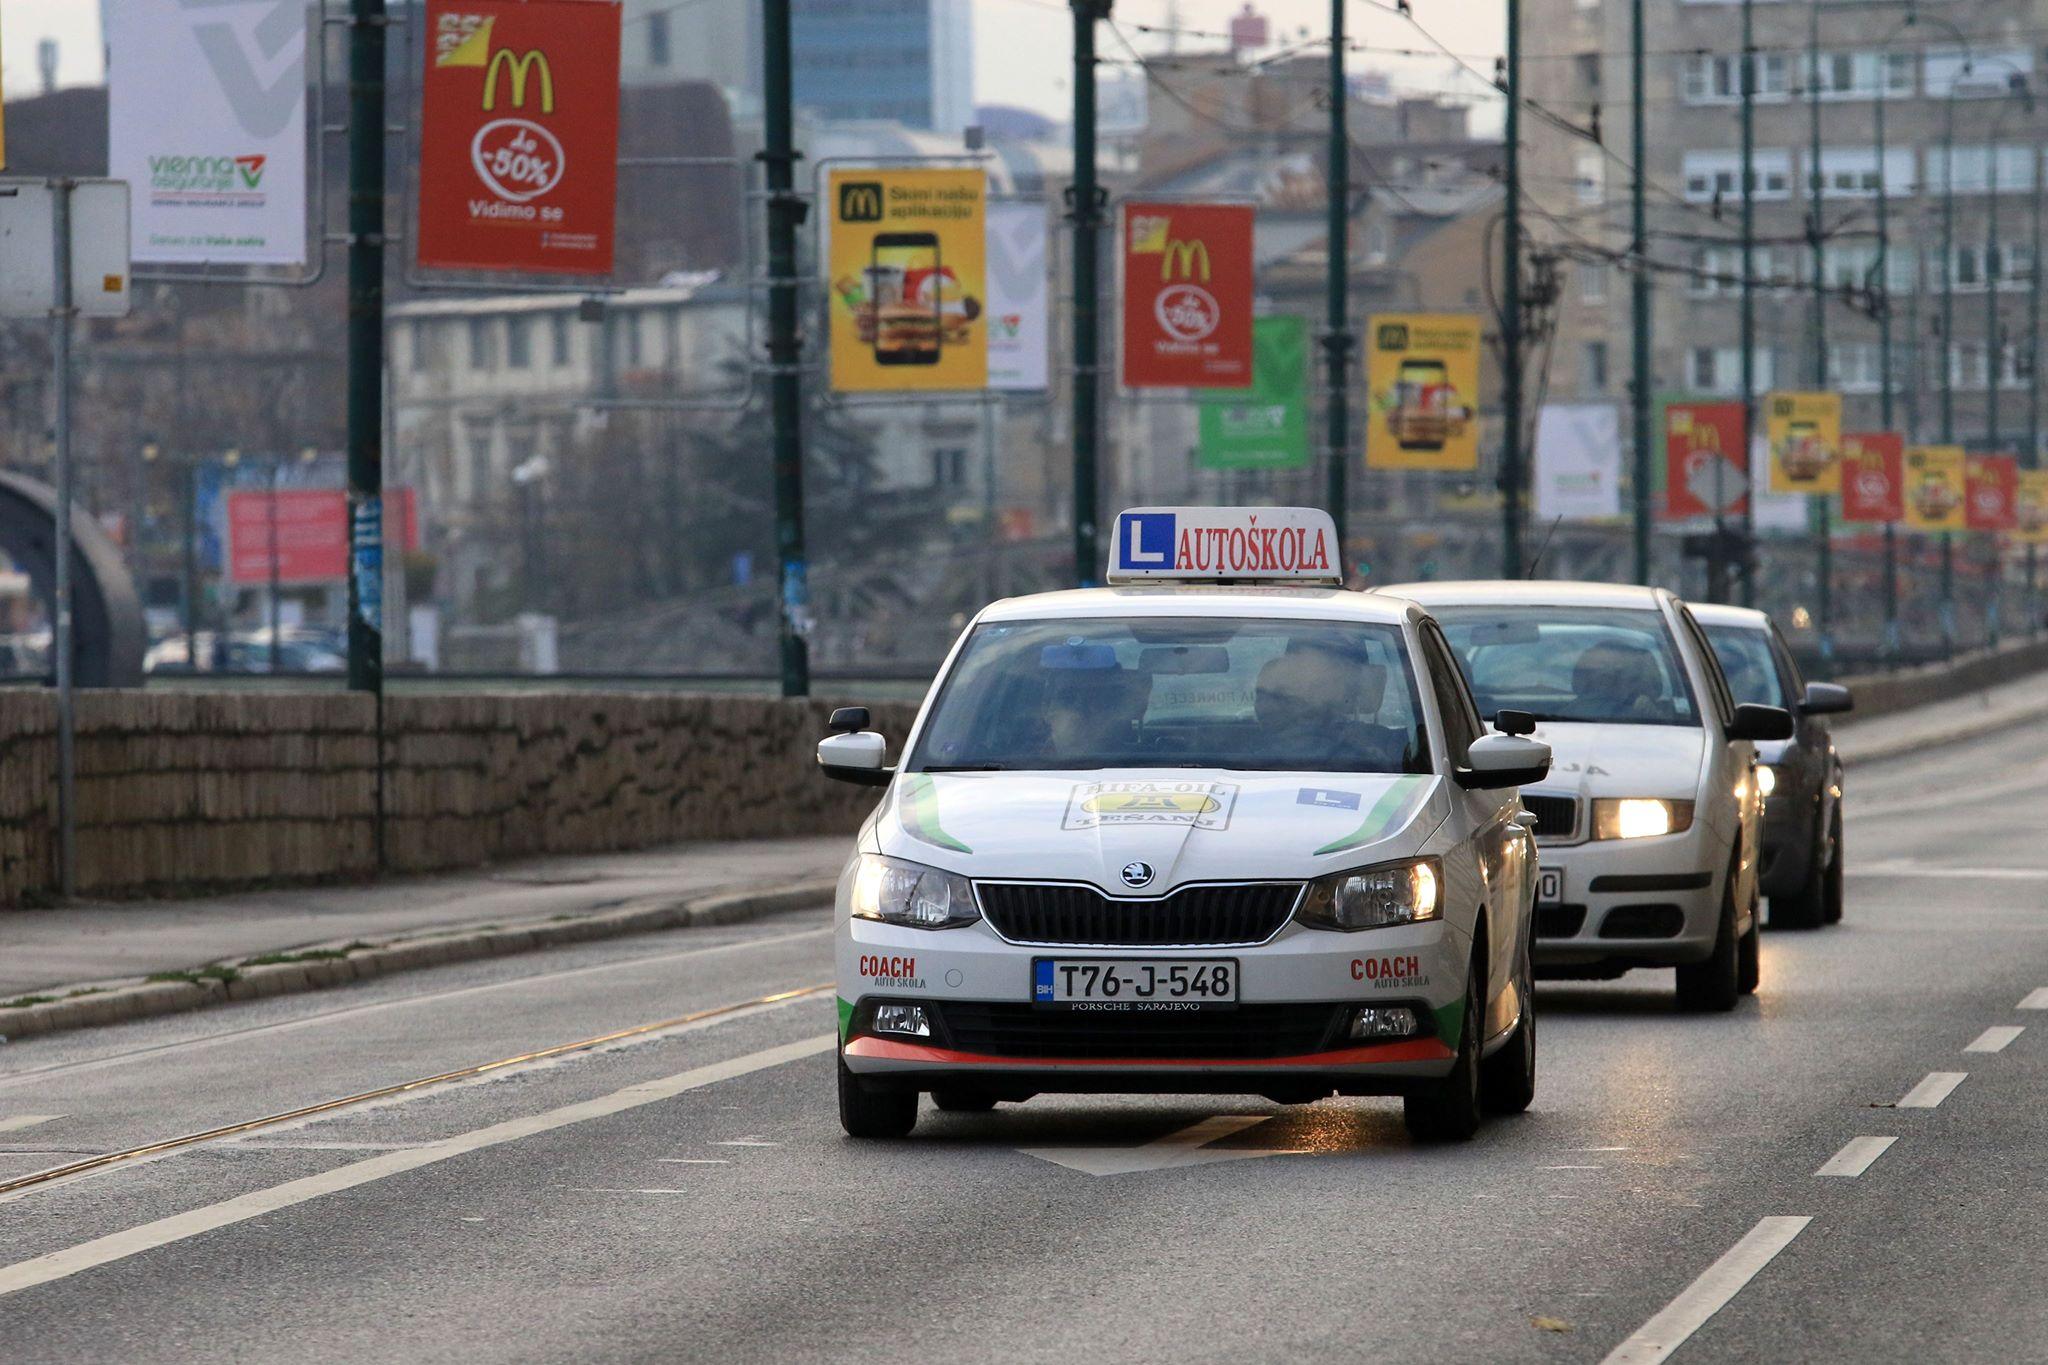 Polaganje vozačkog ispita moglo bi koštati i do 1.600 KM (Foto: A. Durgut) - Avaz